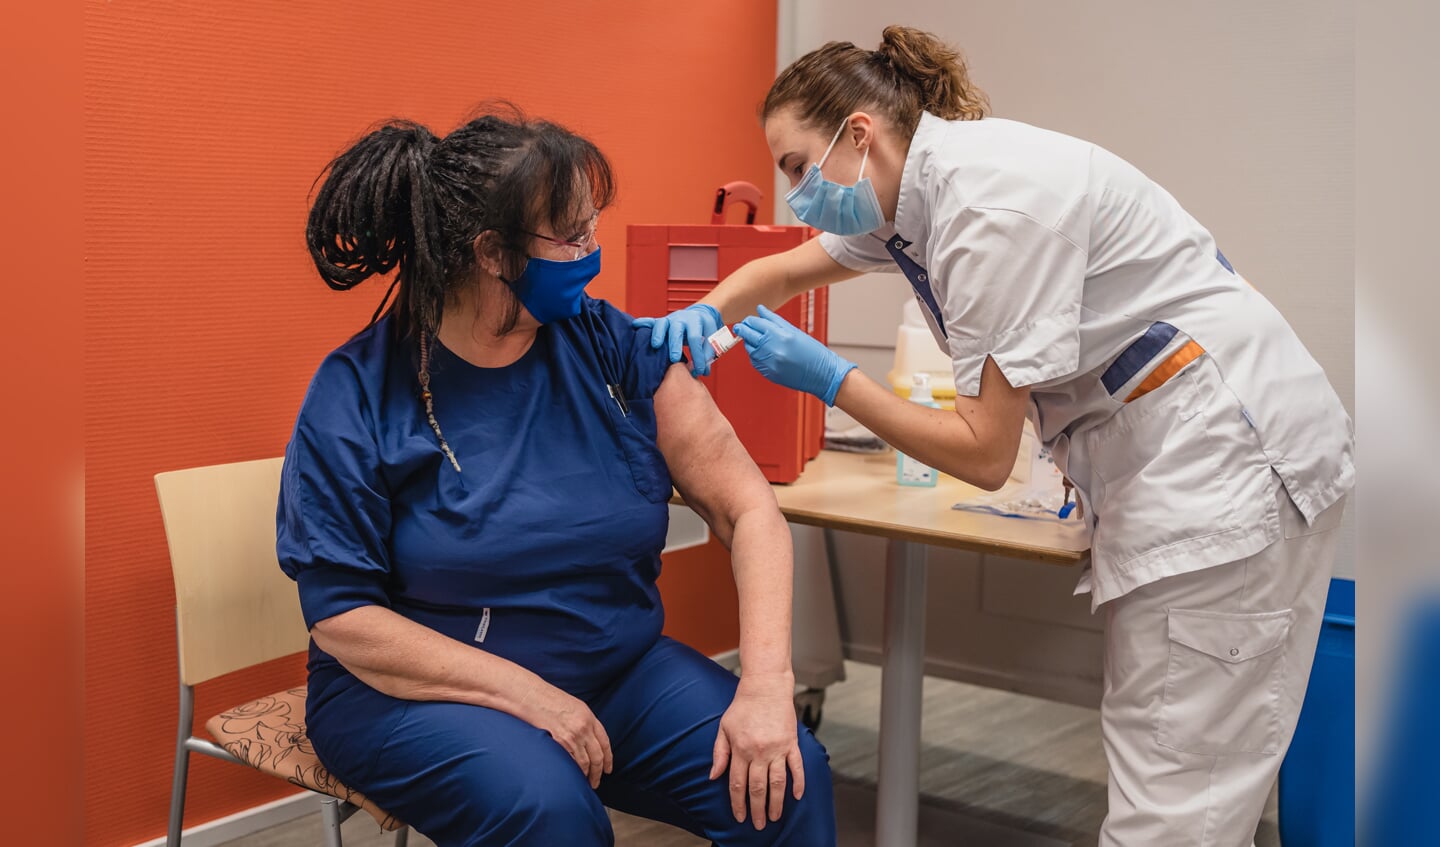 IC verpleegkundige Yolanda Mensink krijgt als eerste medewerker van St Jansdal het vaccin van BioNtech/Pfizer tegen COVID-19 toegediend 